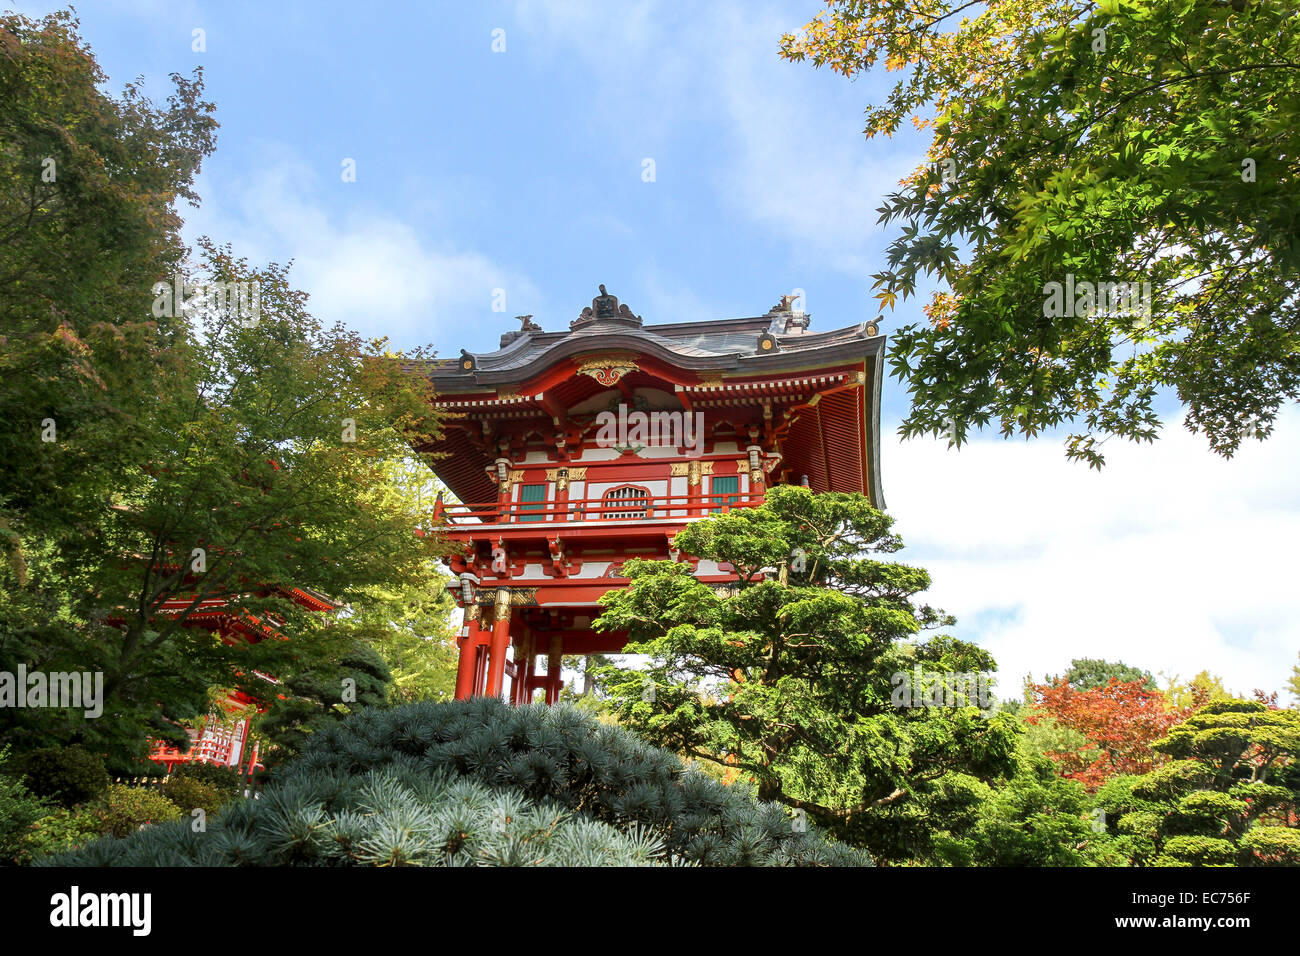 Pagoda, Japanese Tea Garden, Golden Gate Park, San Francisco, Stock Photo